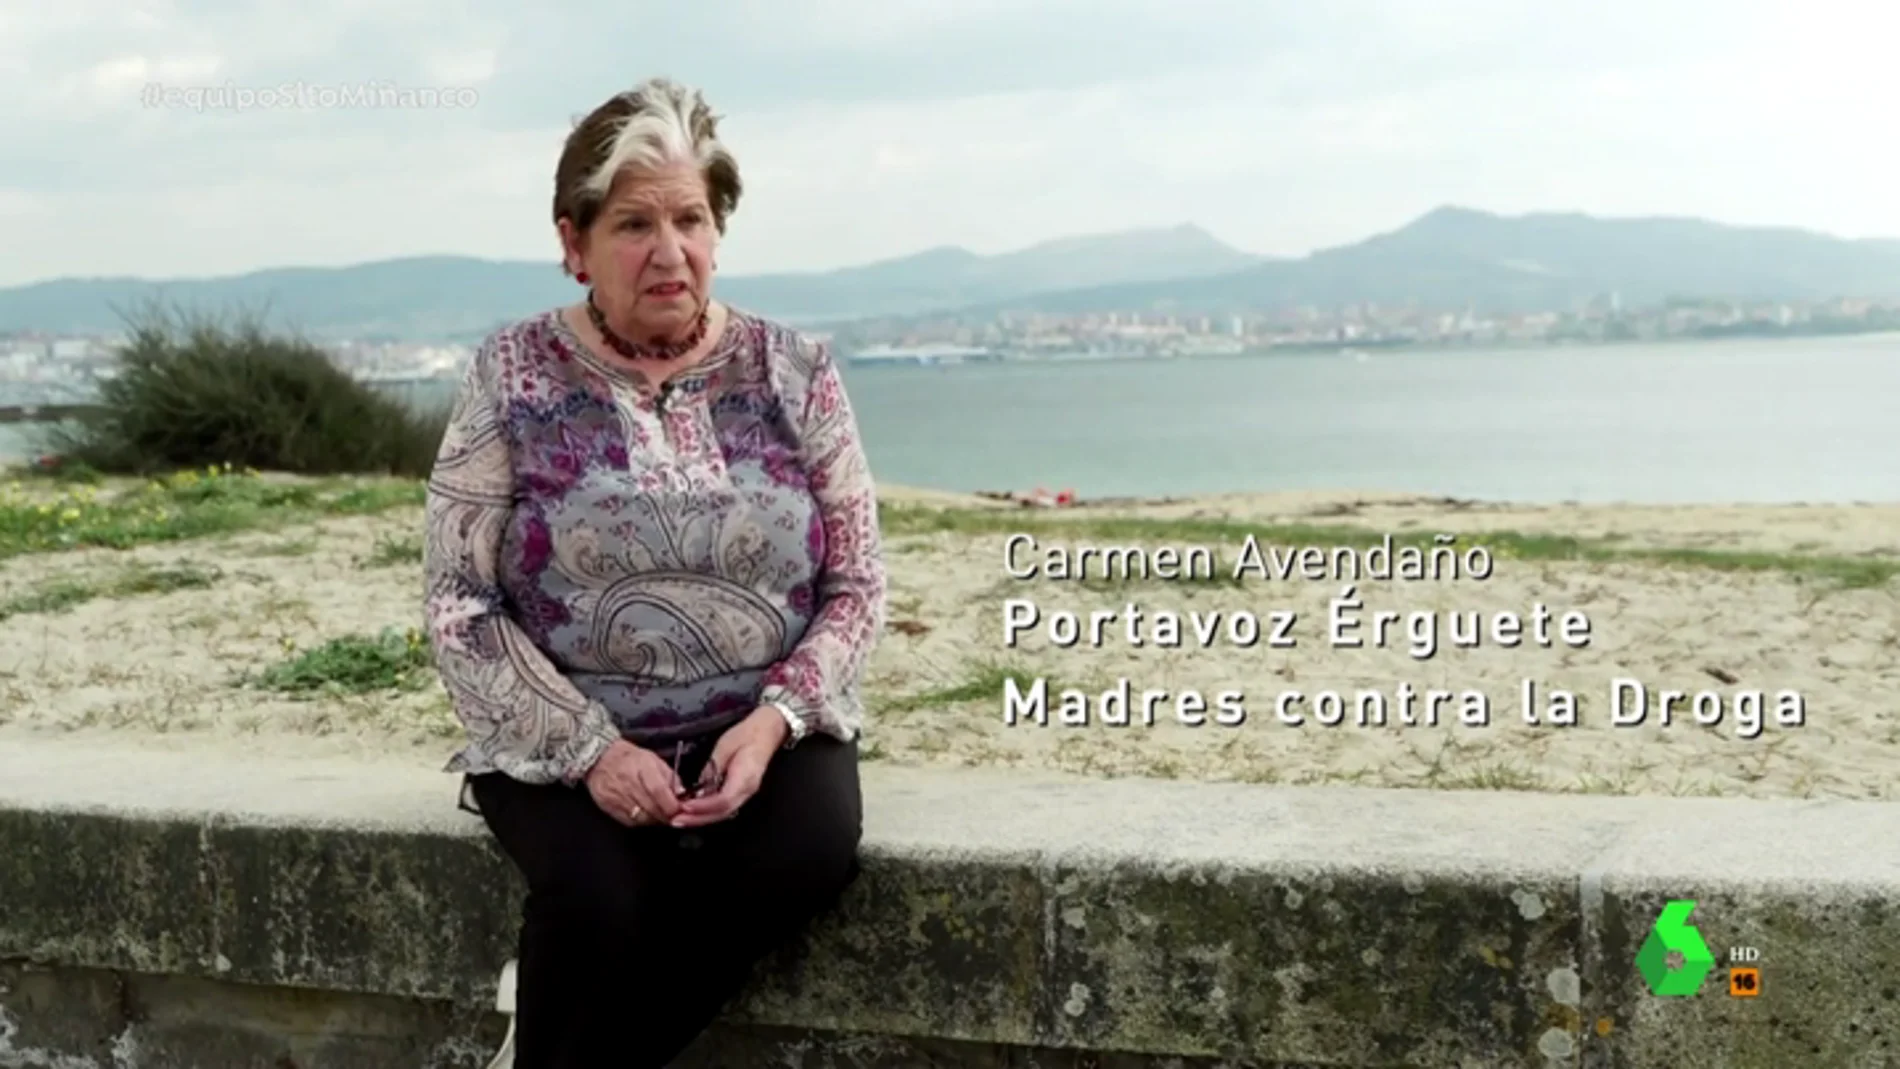 La lucha de Carmen Avendaño contra la droga en Galicia: "Sito me dijo que tuviera cuidado. Me cortaron los frenos"